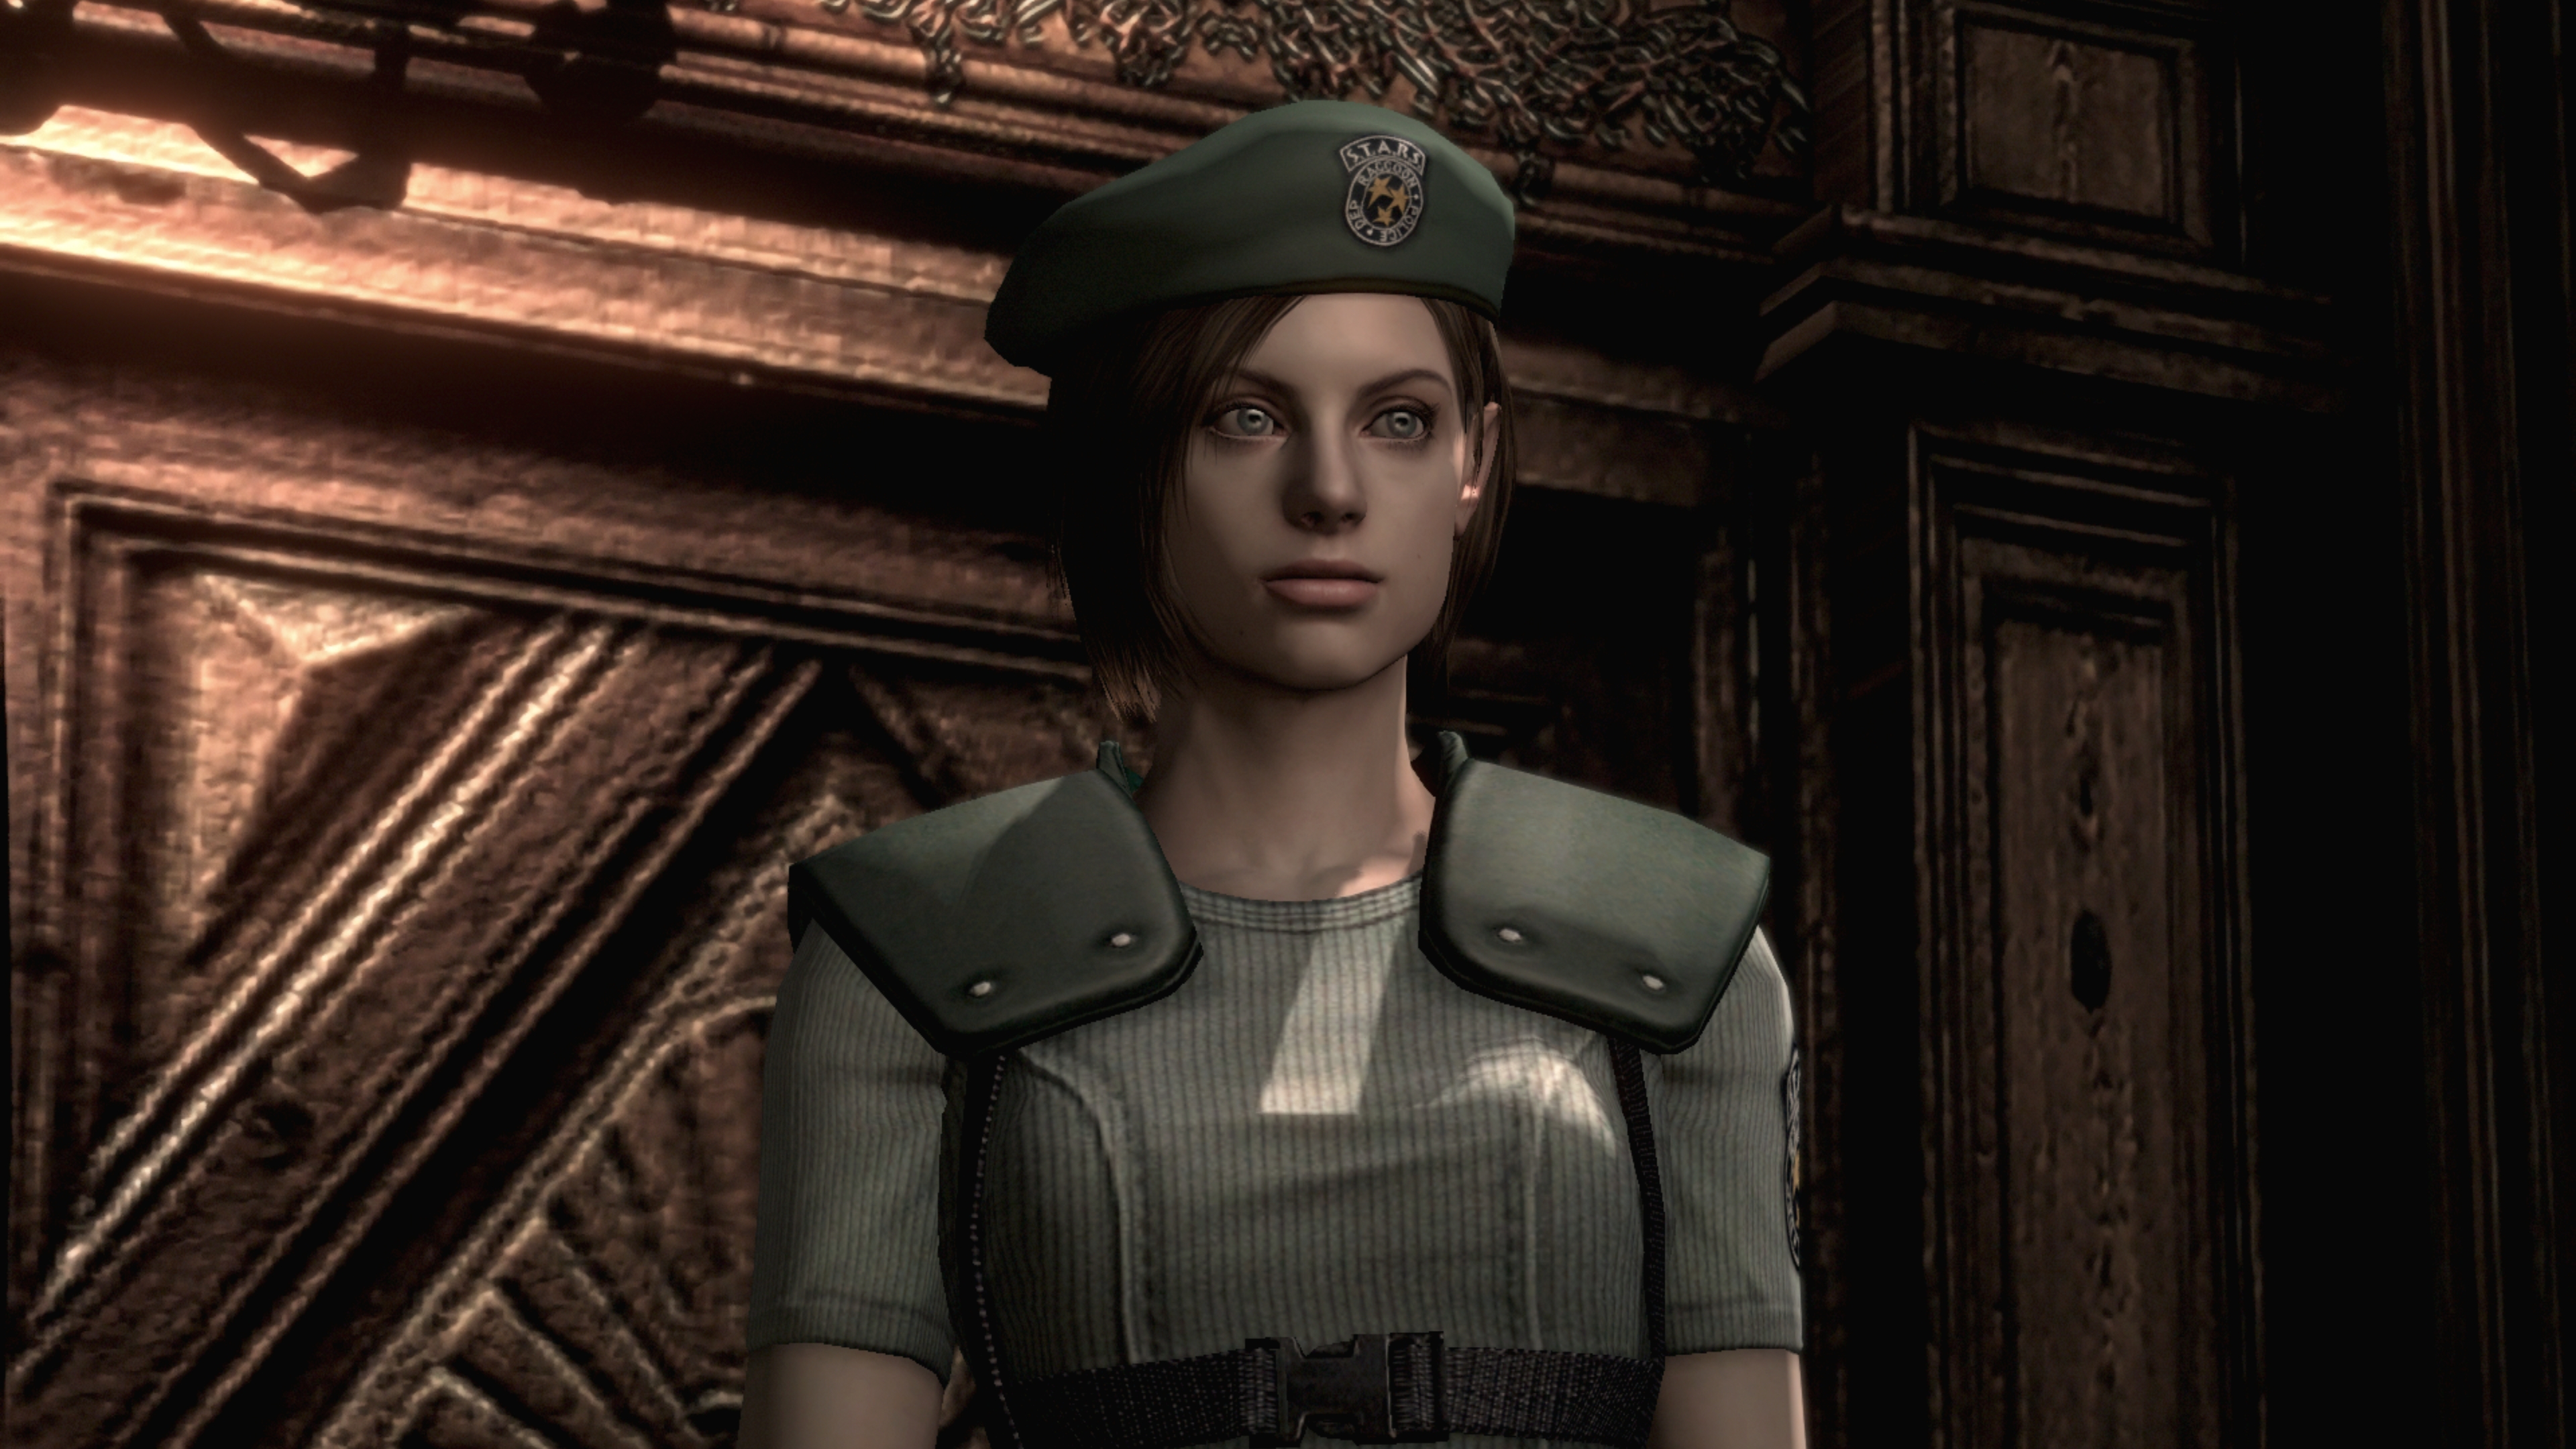 Perfil: Jill Valentine (Resident Evil) - Nintendo Blast